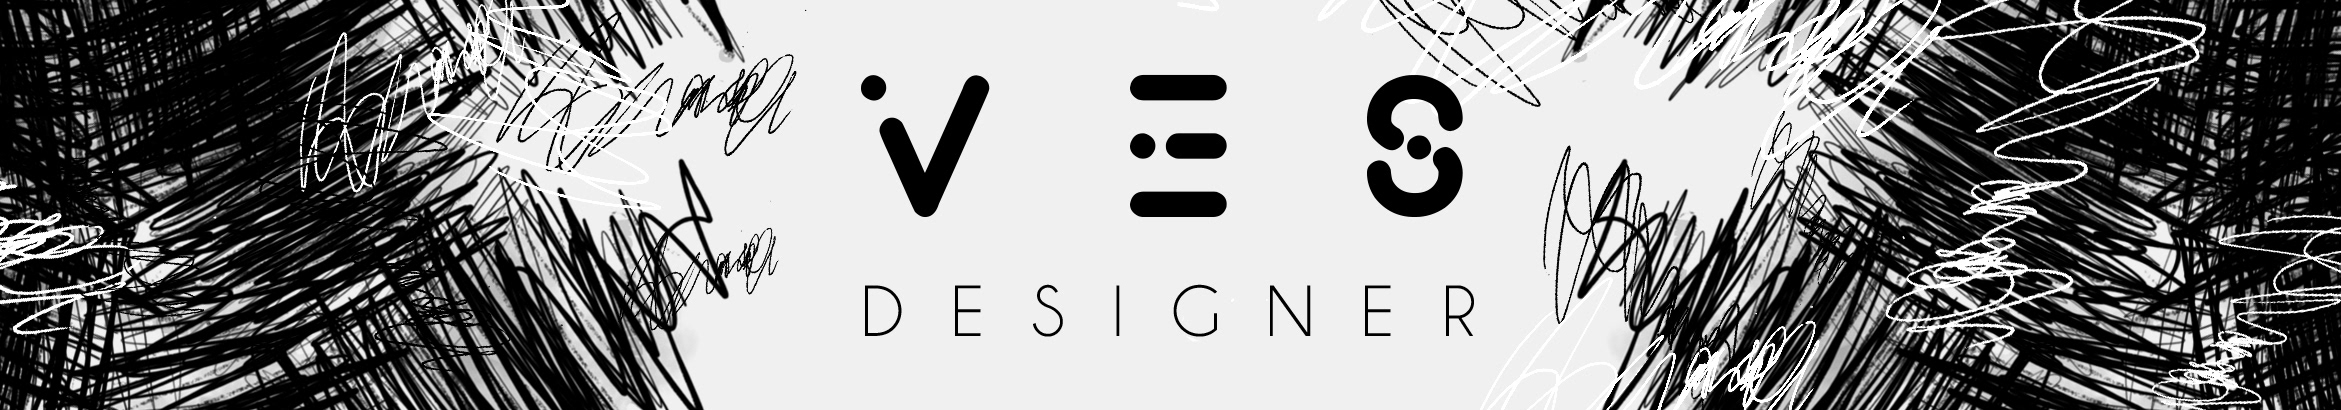 VES Designer's profile banner